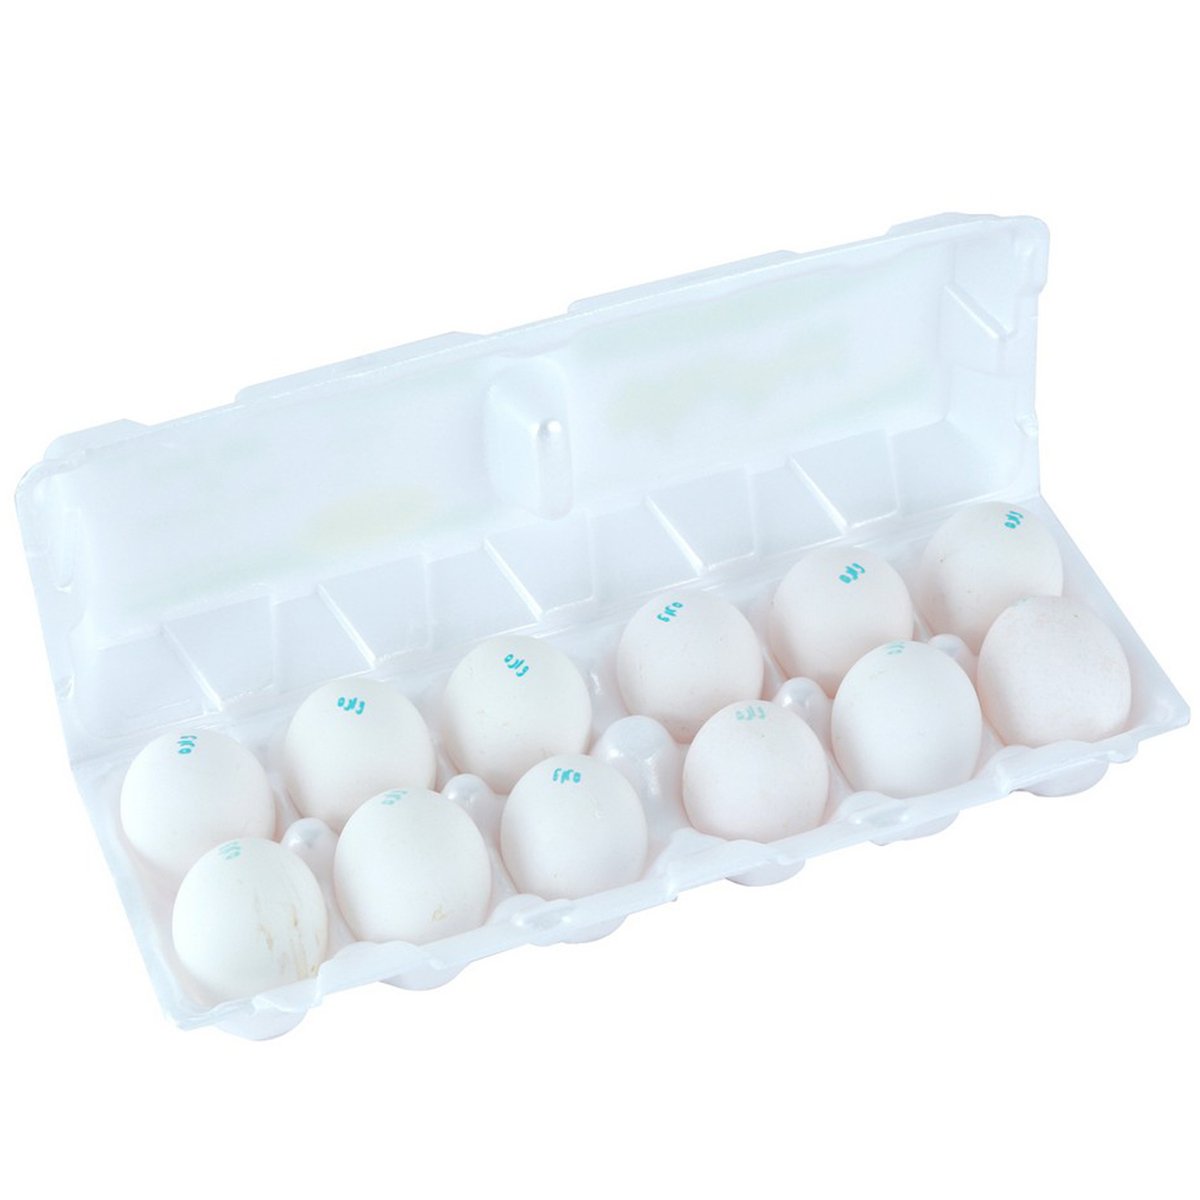 Wara Eggs 12pcs